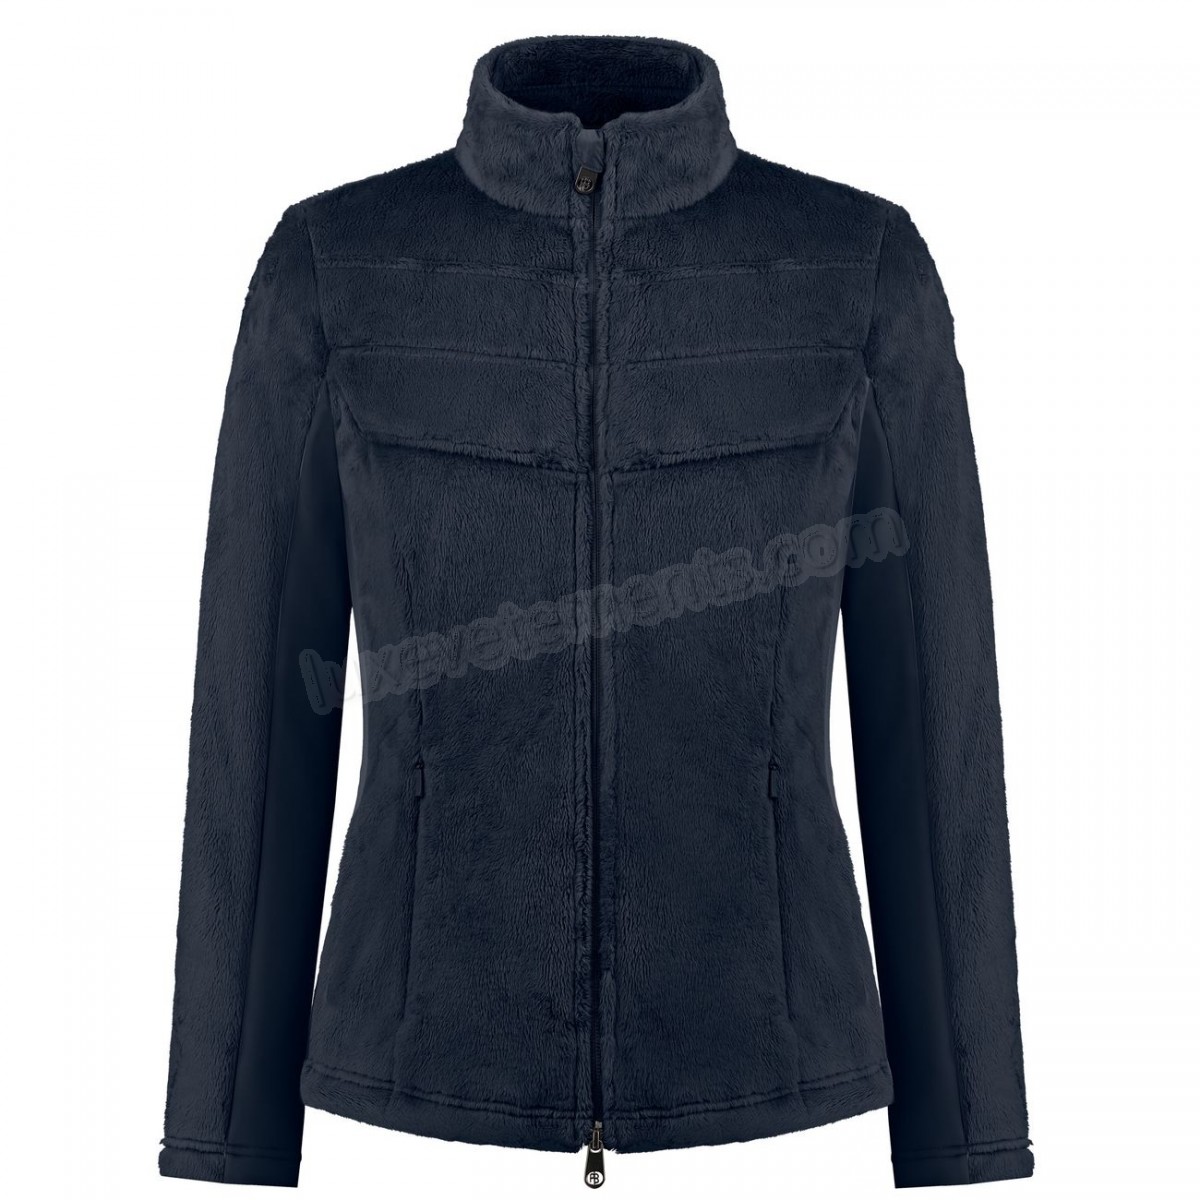 Poivre Blanc-Sports d'hiver femme POIVRE BLANC Polaire Poivre Blanc Long Pile Fleece Jacket 1603 Gothic Blue 4 Femme Vente en ligne - -2